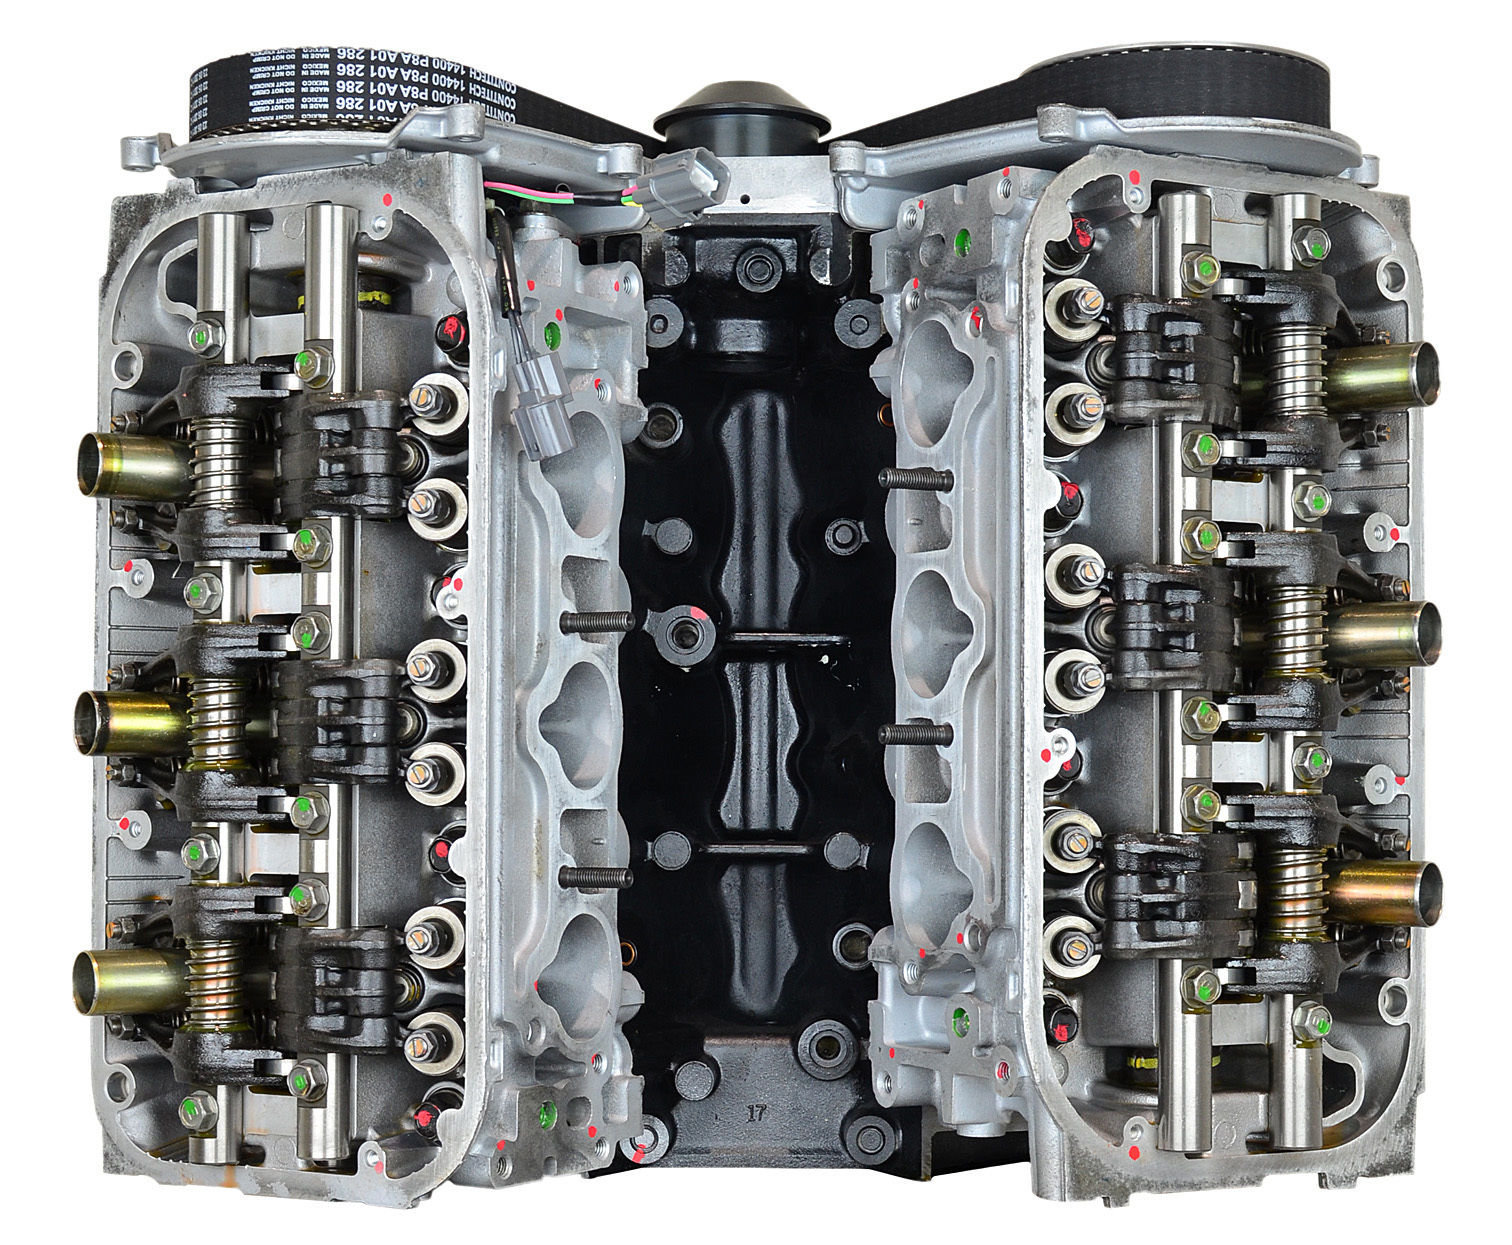 Honda J35A7 rebuilt engine for Honda Pilot